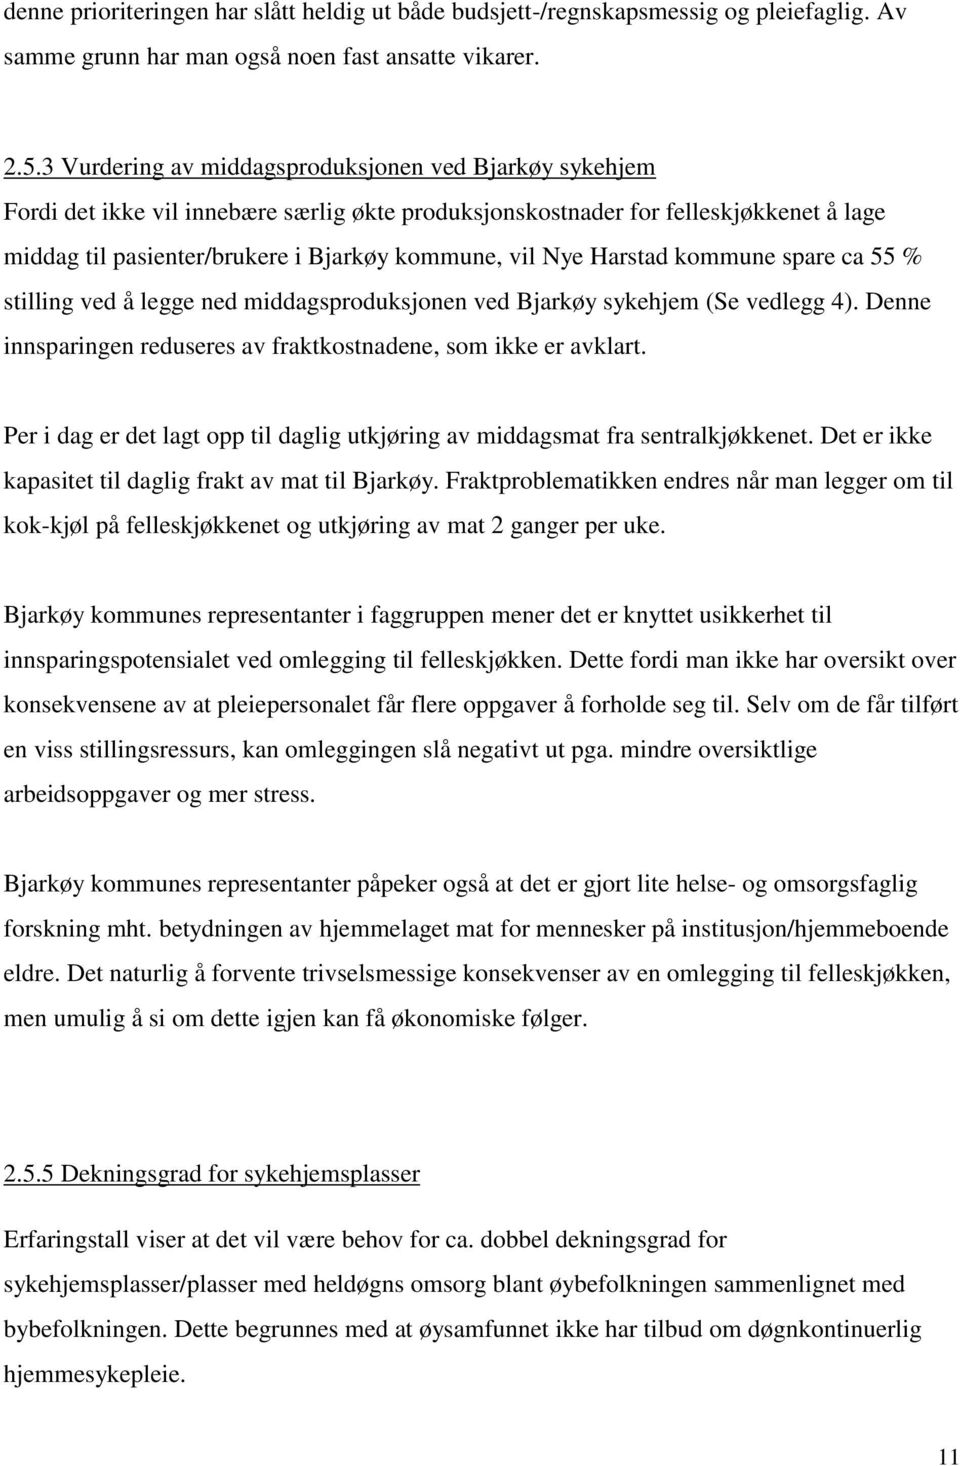 Harstad kommune spare ca 55 % stilling ved å legge ned middagsproduksjonen ved Bjarkøy sykehjem (Se vedlegg 4). Denne innsparingen reduseres av fraktkostnadene, som ikke er avklart.